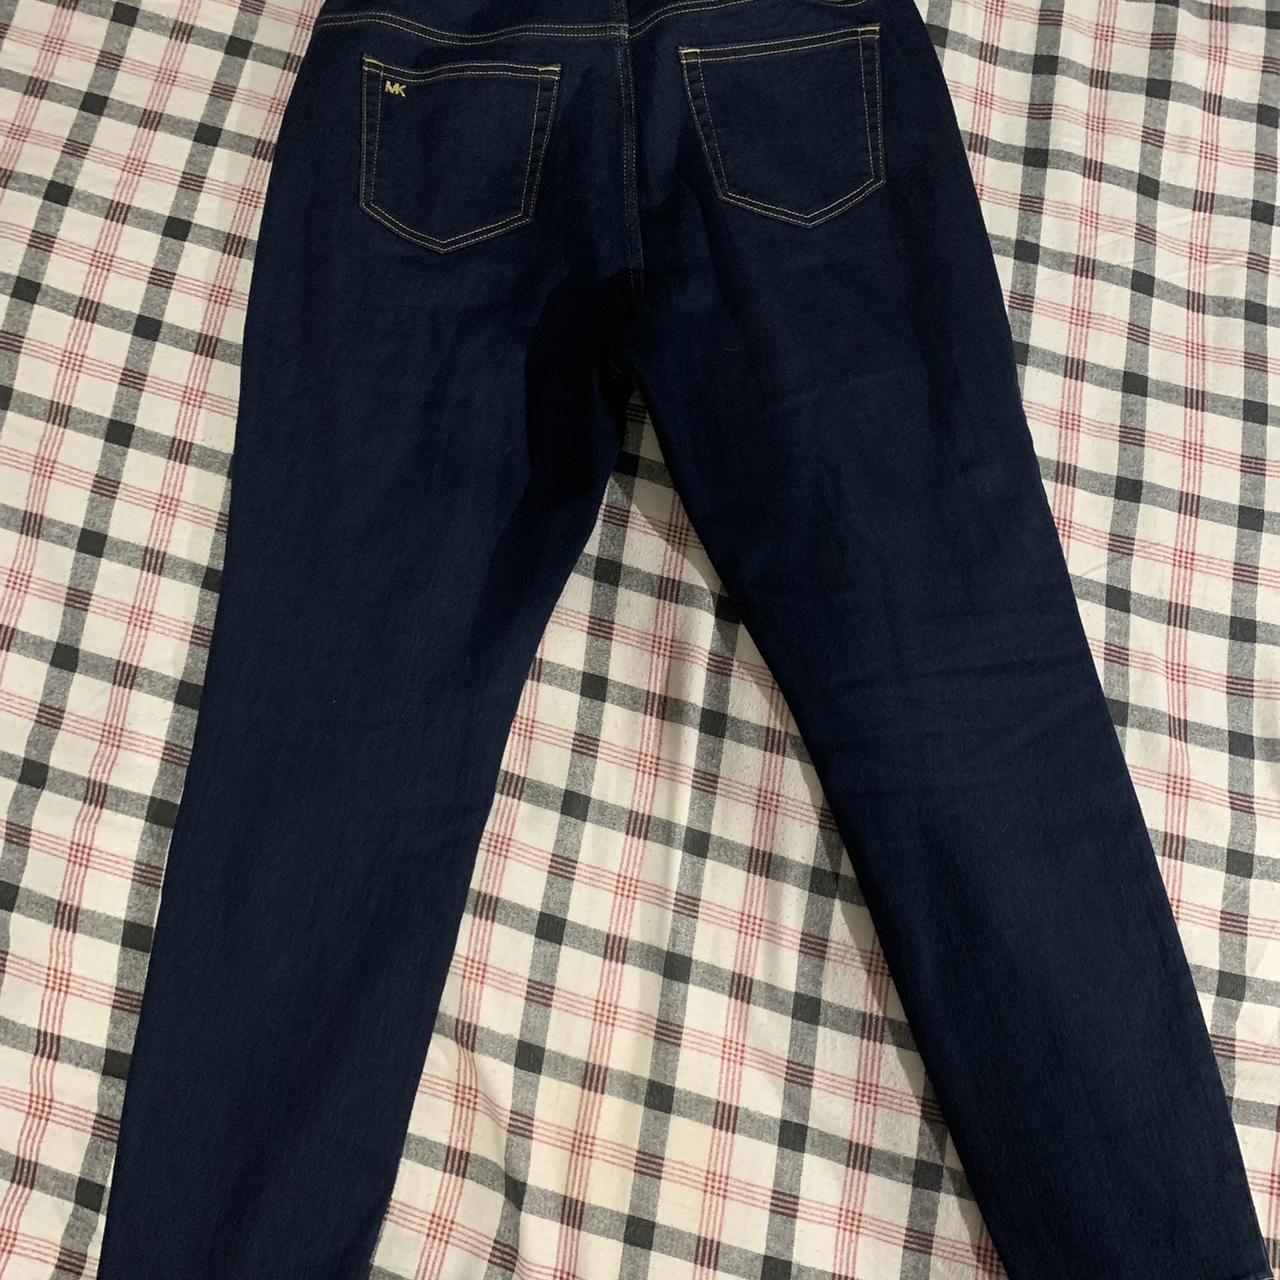 SALE  Michael Kors Jeans Flare Leg  Size 6  Michael kors jeans Flare  jeans Clothes design